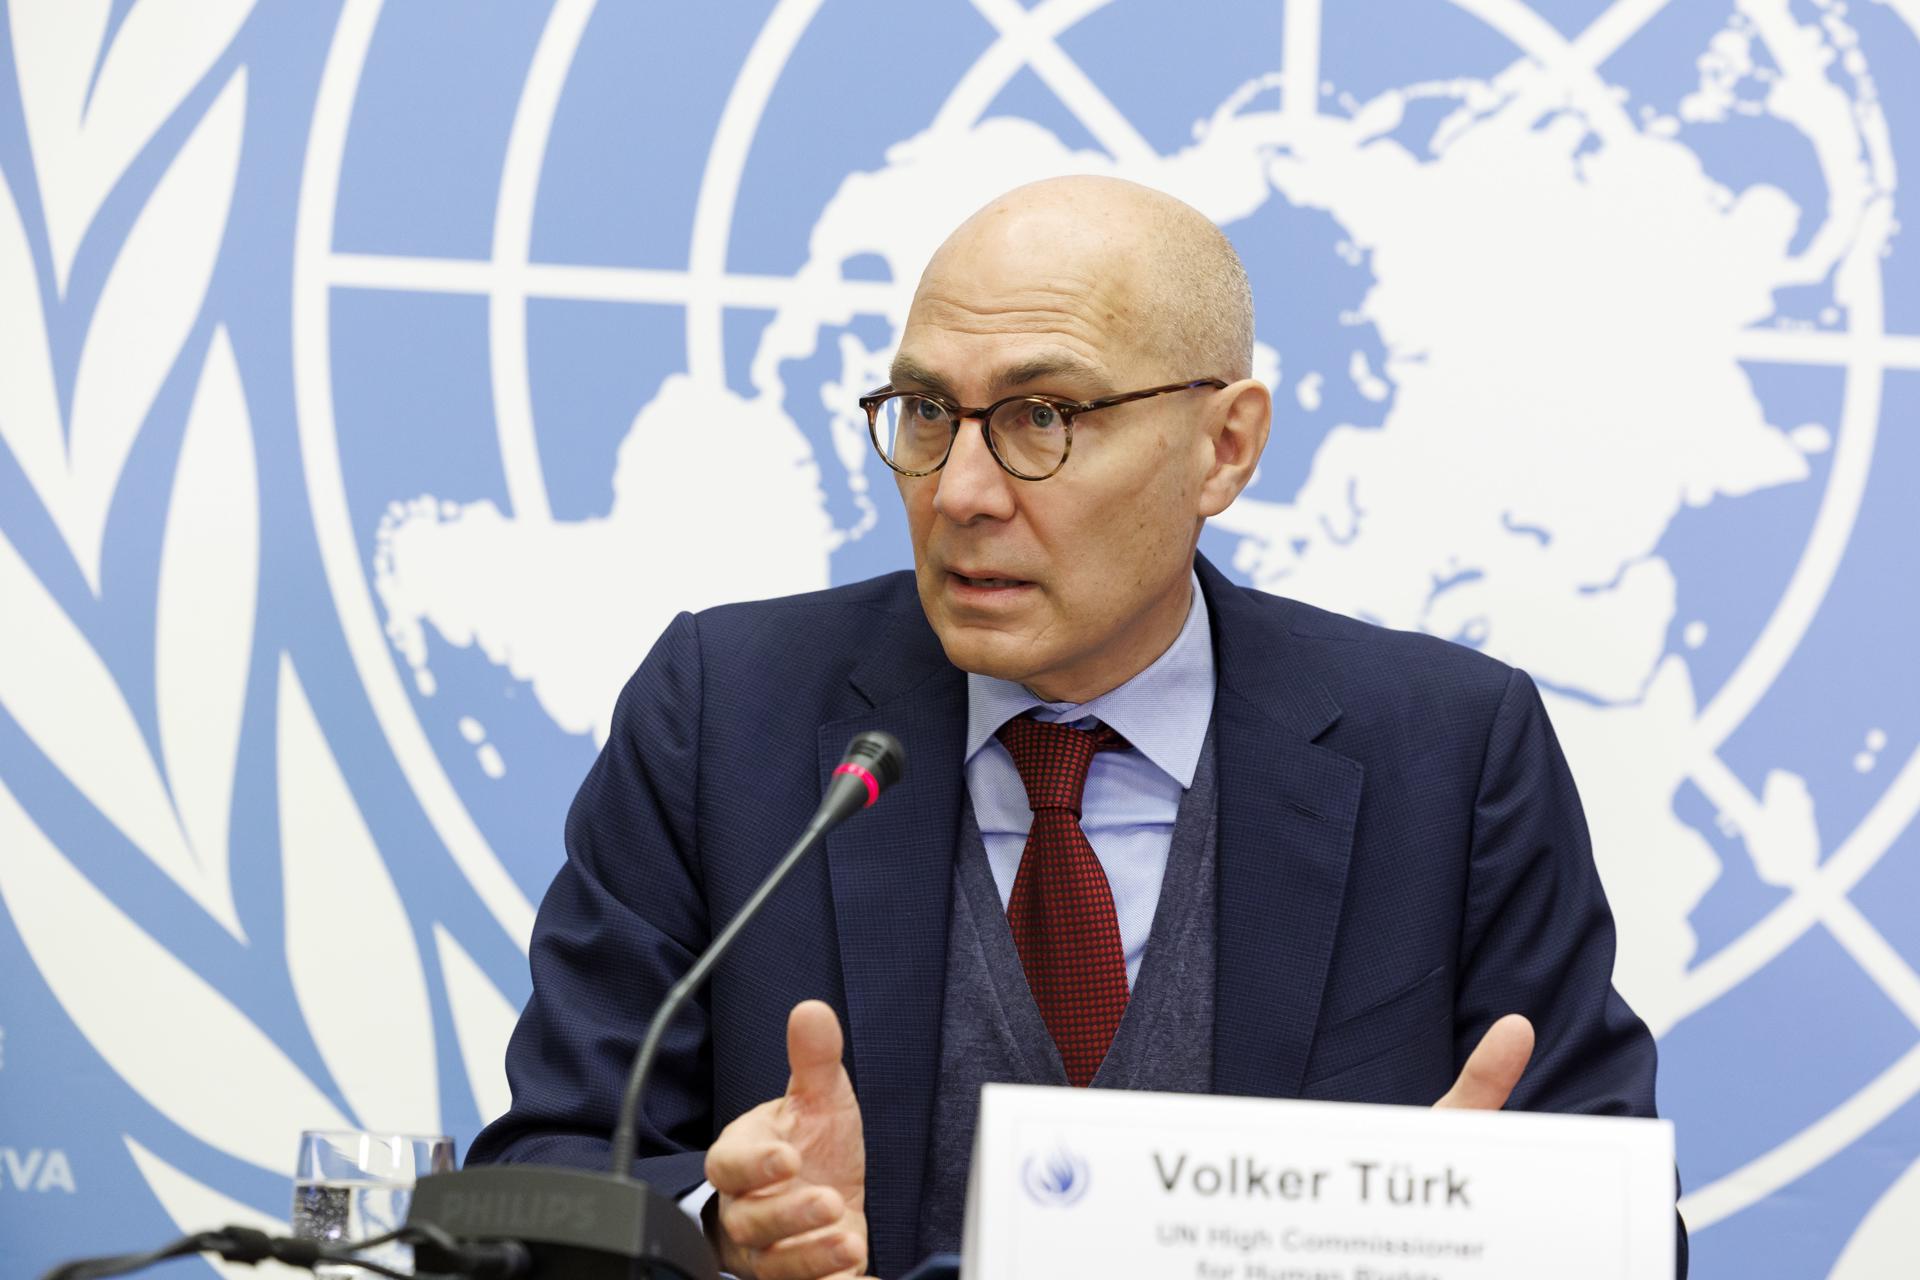 El alto comisionado de la Naciones Unidas para los derechos humanos, Volker Türk, el 9 de diciembre de 2022. EFE/Salvatore di Nolfi